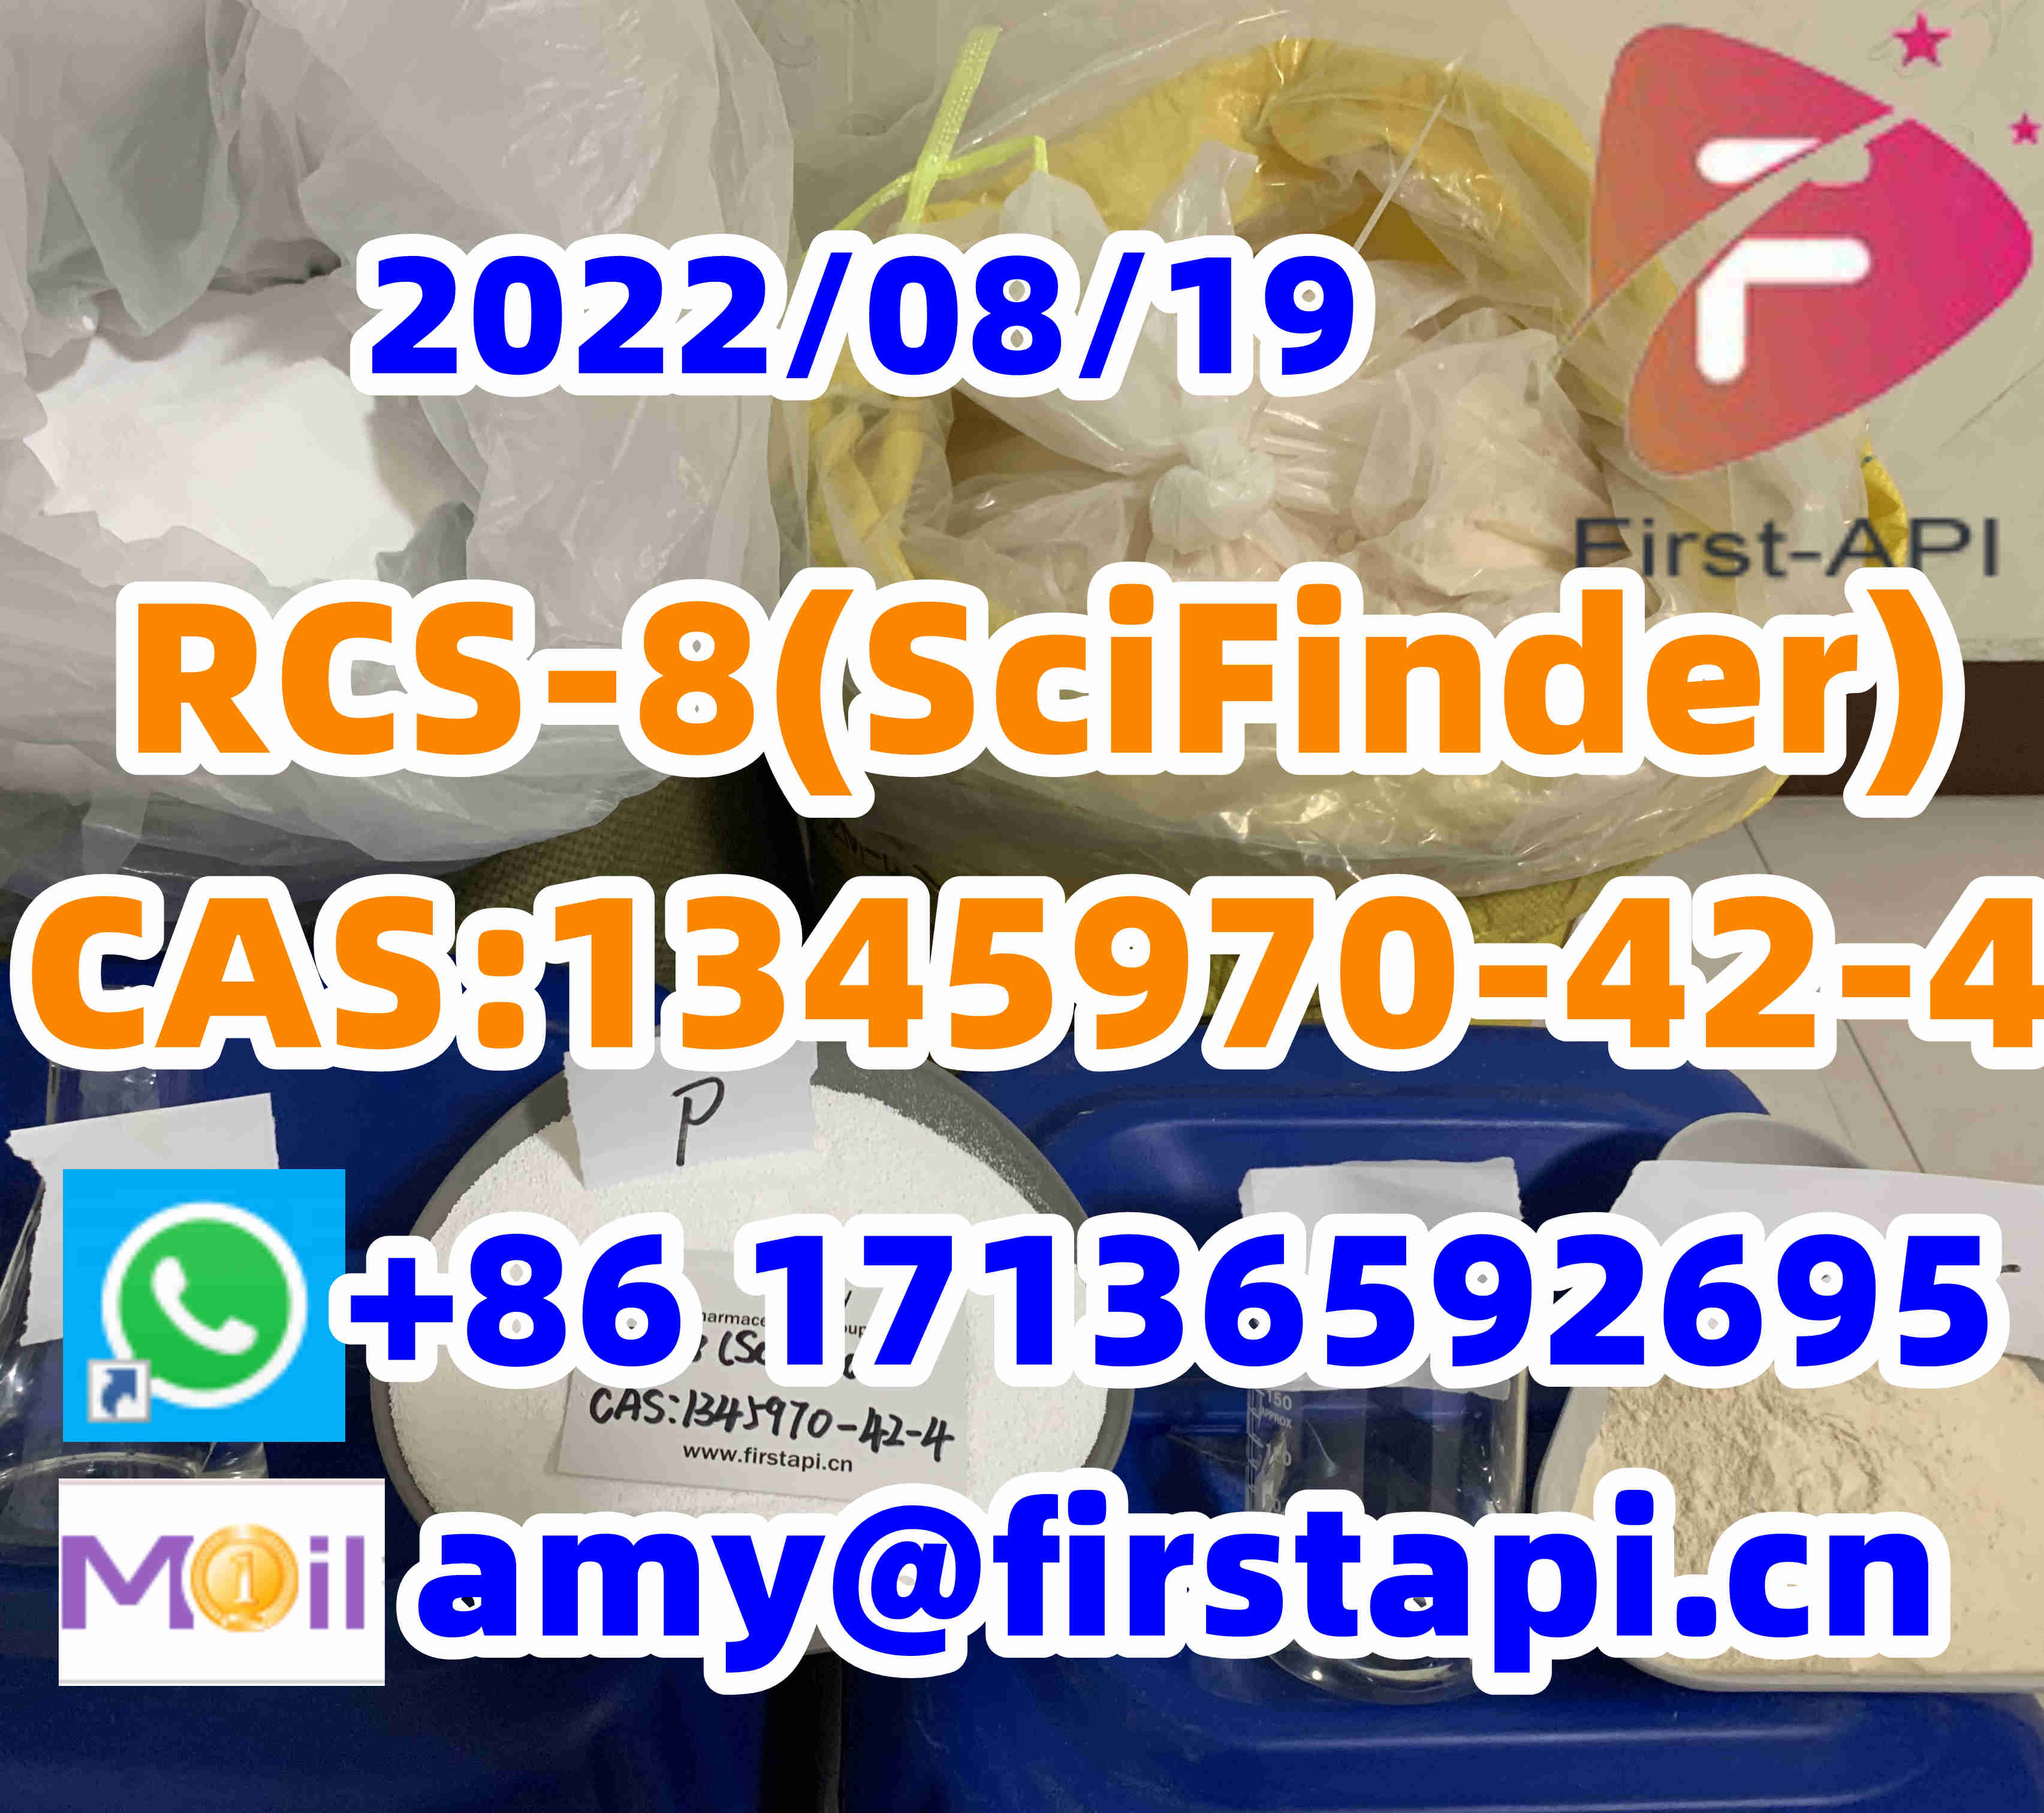 RCS-8(SciFinder),high quality,low price,CAS:1345970-42-4,ADB-FUBINACA,AMB-FUBINACA - photo